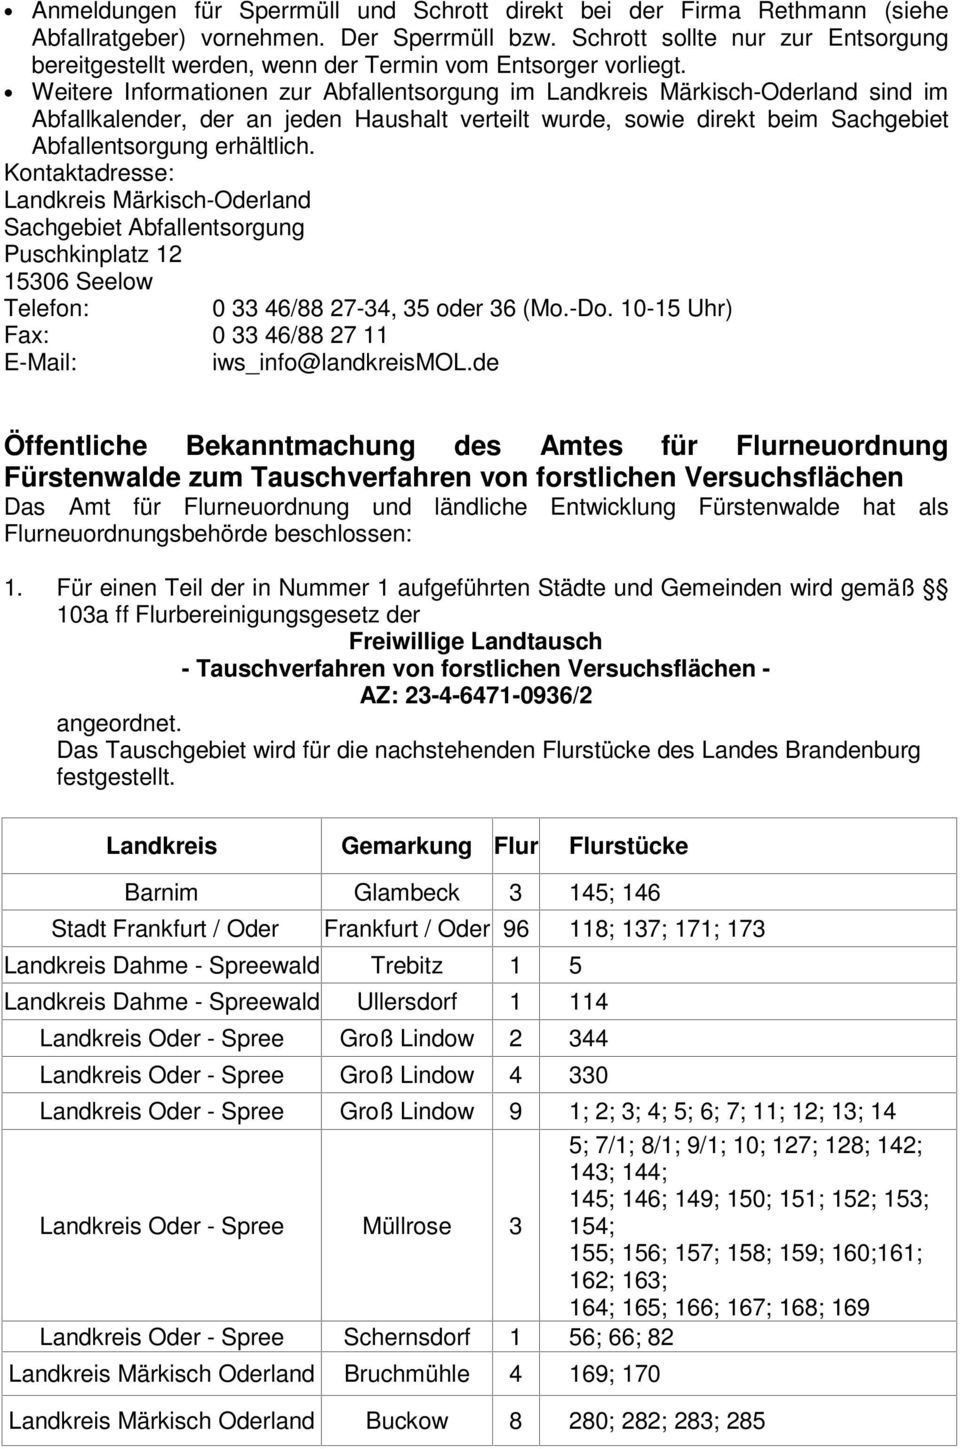 Weitere Informationen zur Abfallentsorgung im Landkreis Märkisch-Oderland sind im Abfallkalender, der an jeden Haushalt verteilt wurde, sowie direkt beim Sachgebiet Abfallentsorgung erhältlich.